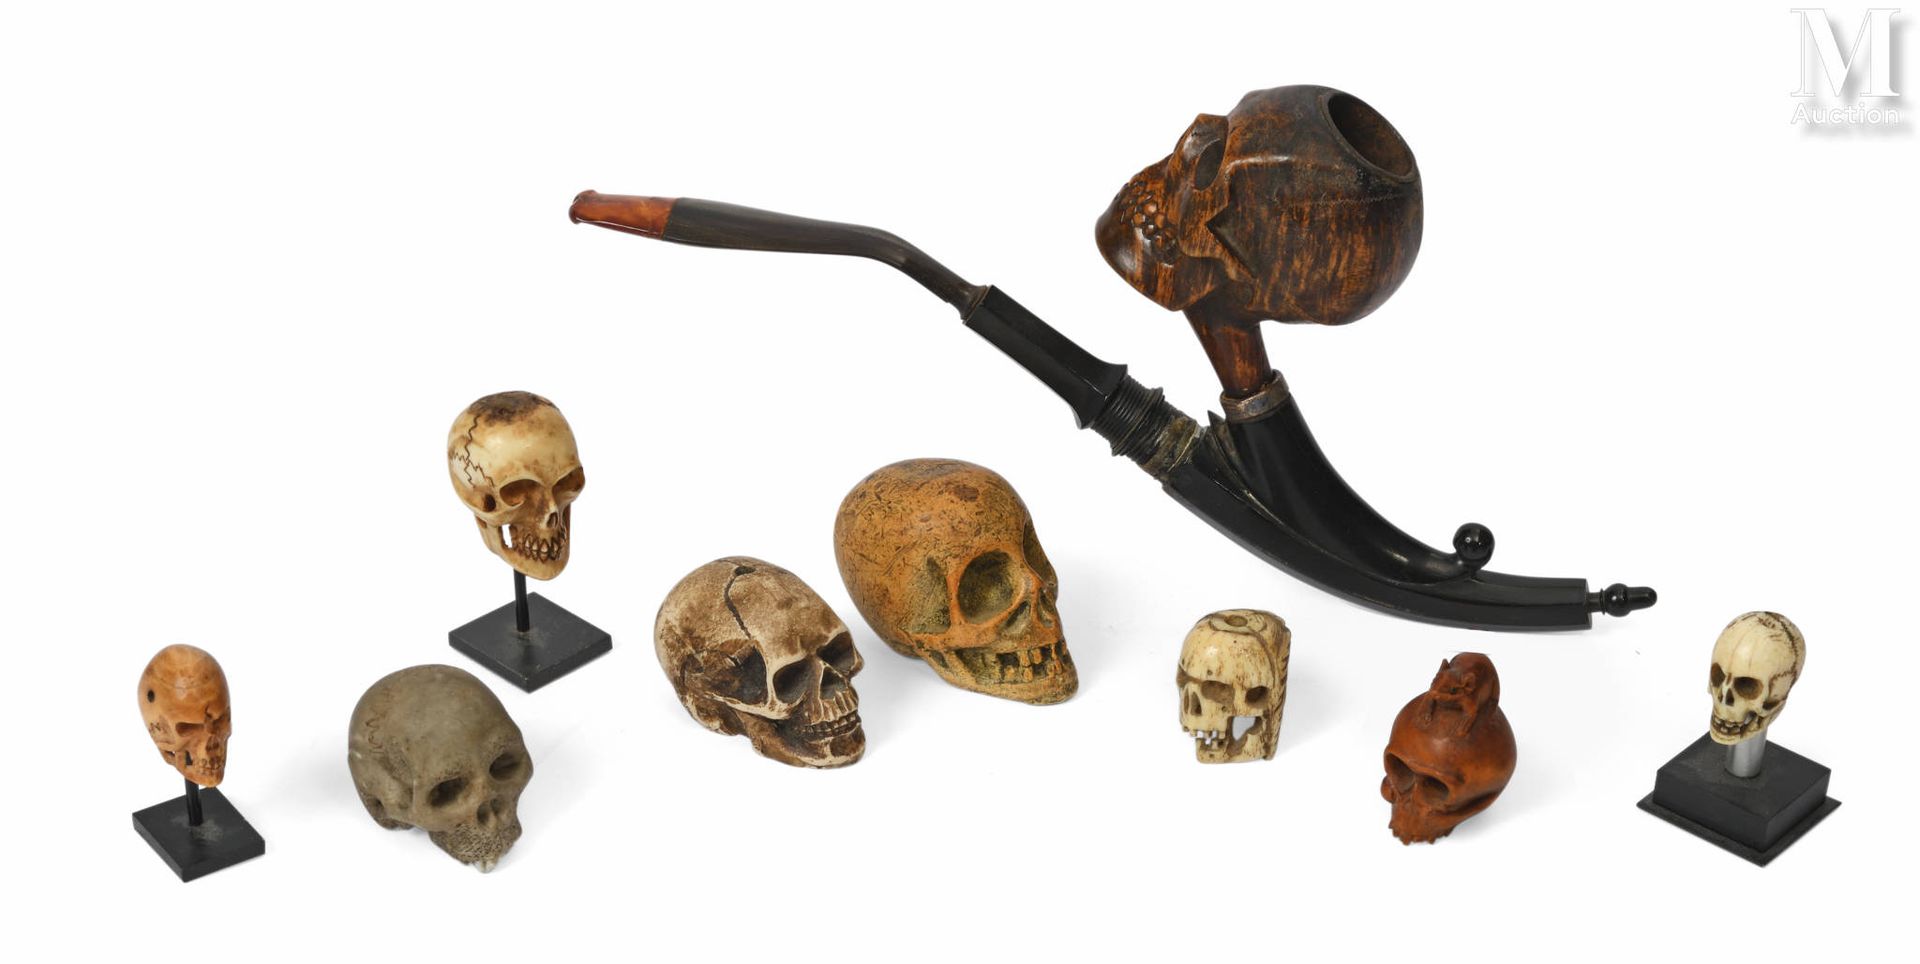 Memento Mori 纪念品套装
- 6个石器、骨质和木质的头骨 
- 1个木制骷髅头，上面有一只老鼠。
- 1个骨头基督头。
和一个带有骷髅头雕刻装饰的烟&hellip;